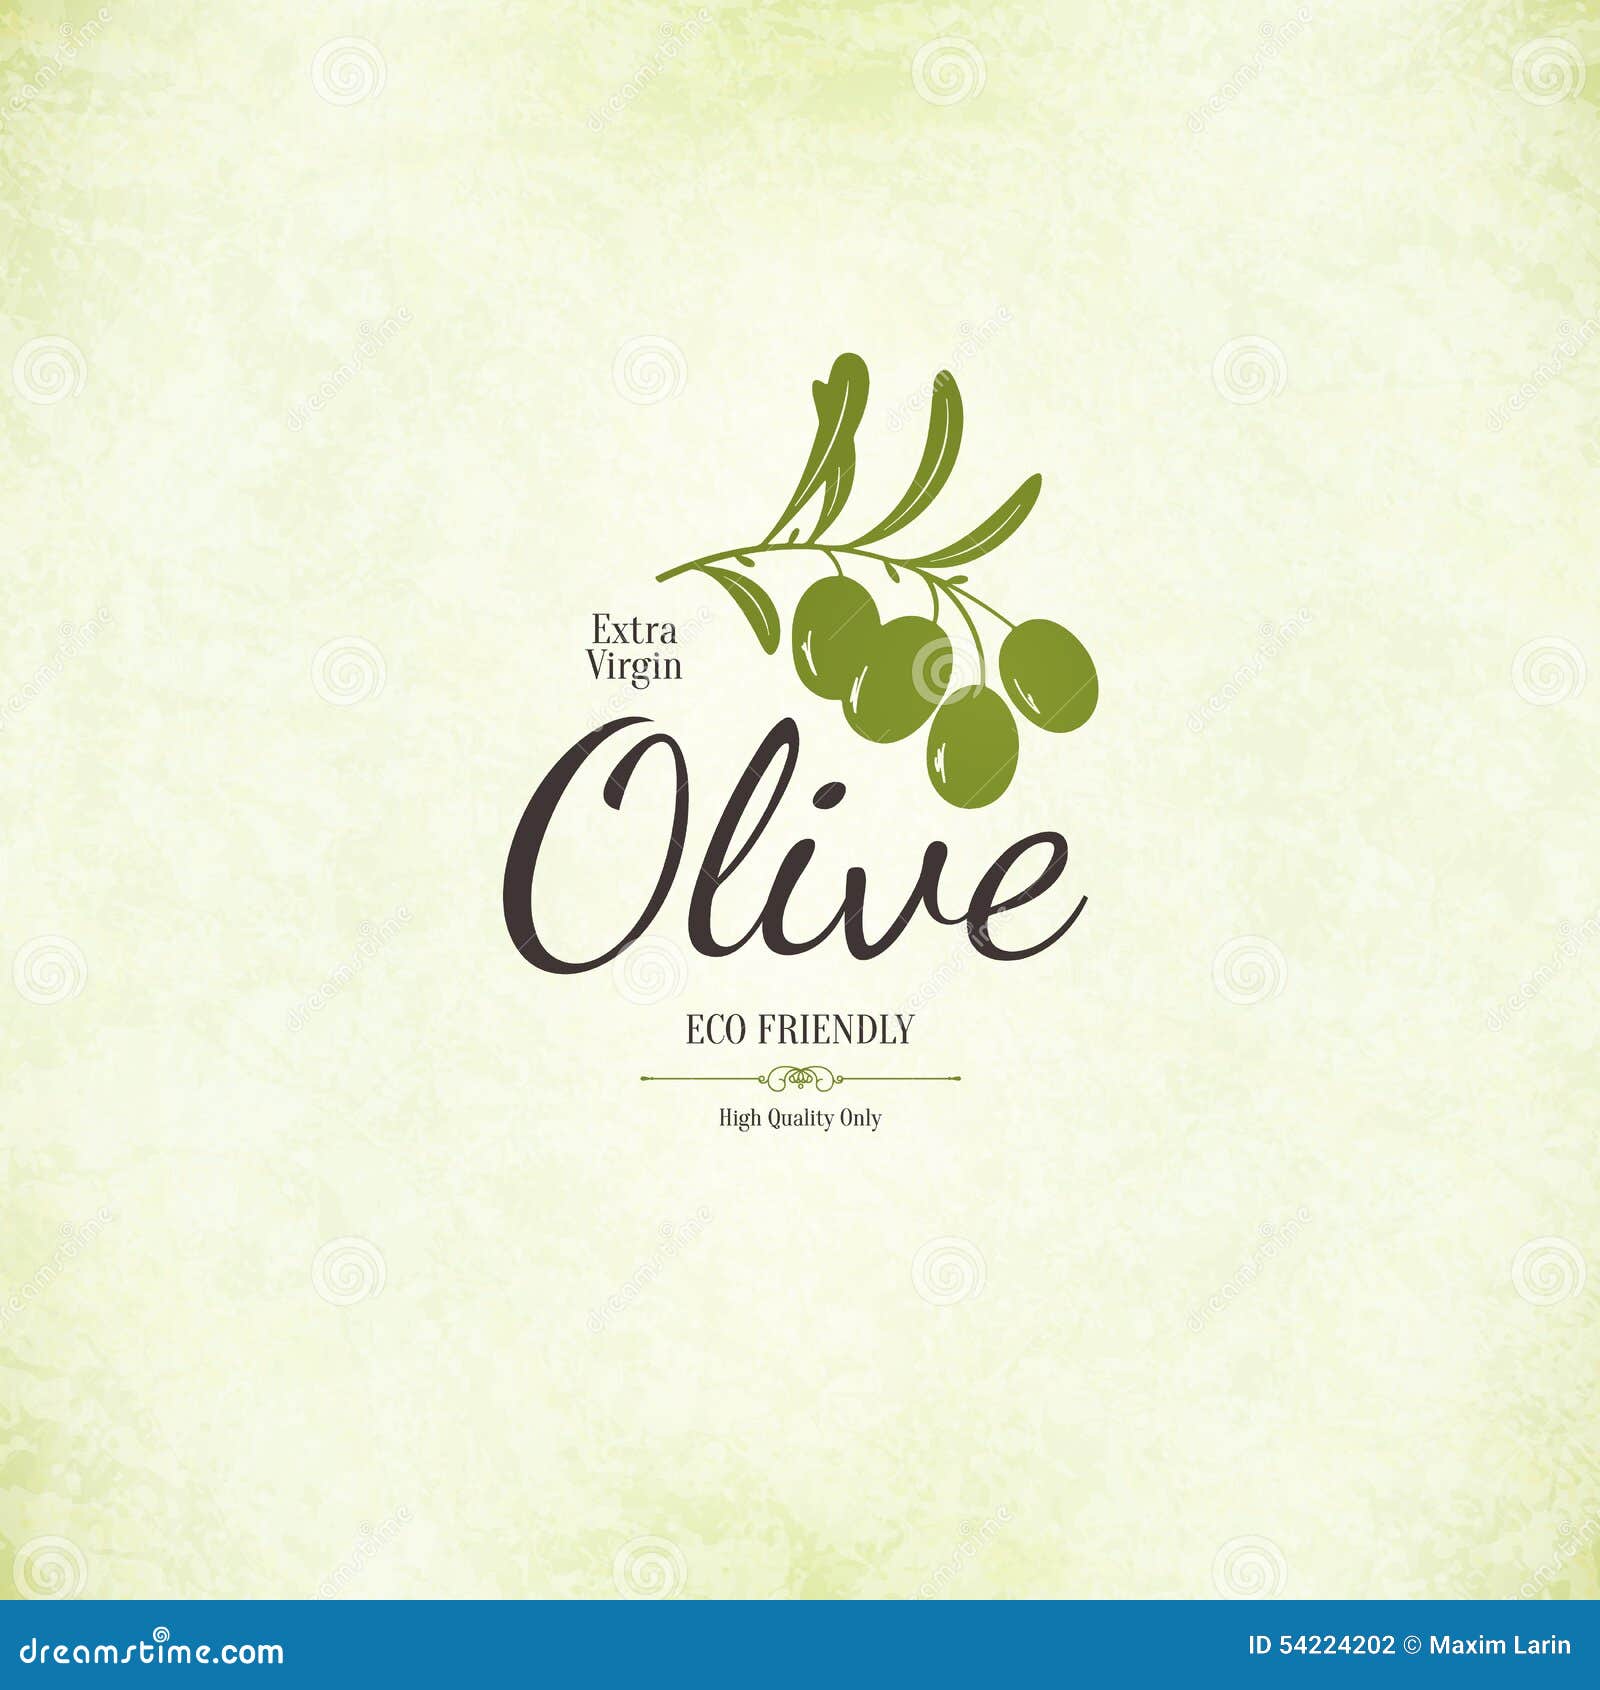 Olive label, logo design stock vector. Illustration of olive - 54224202